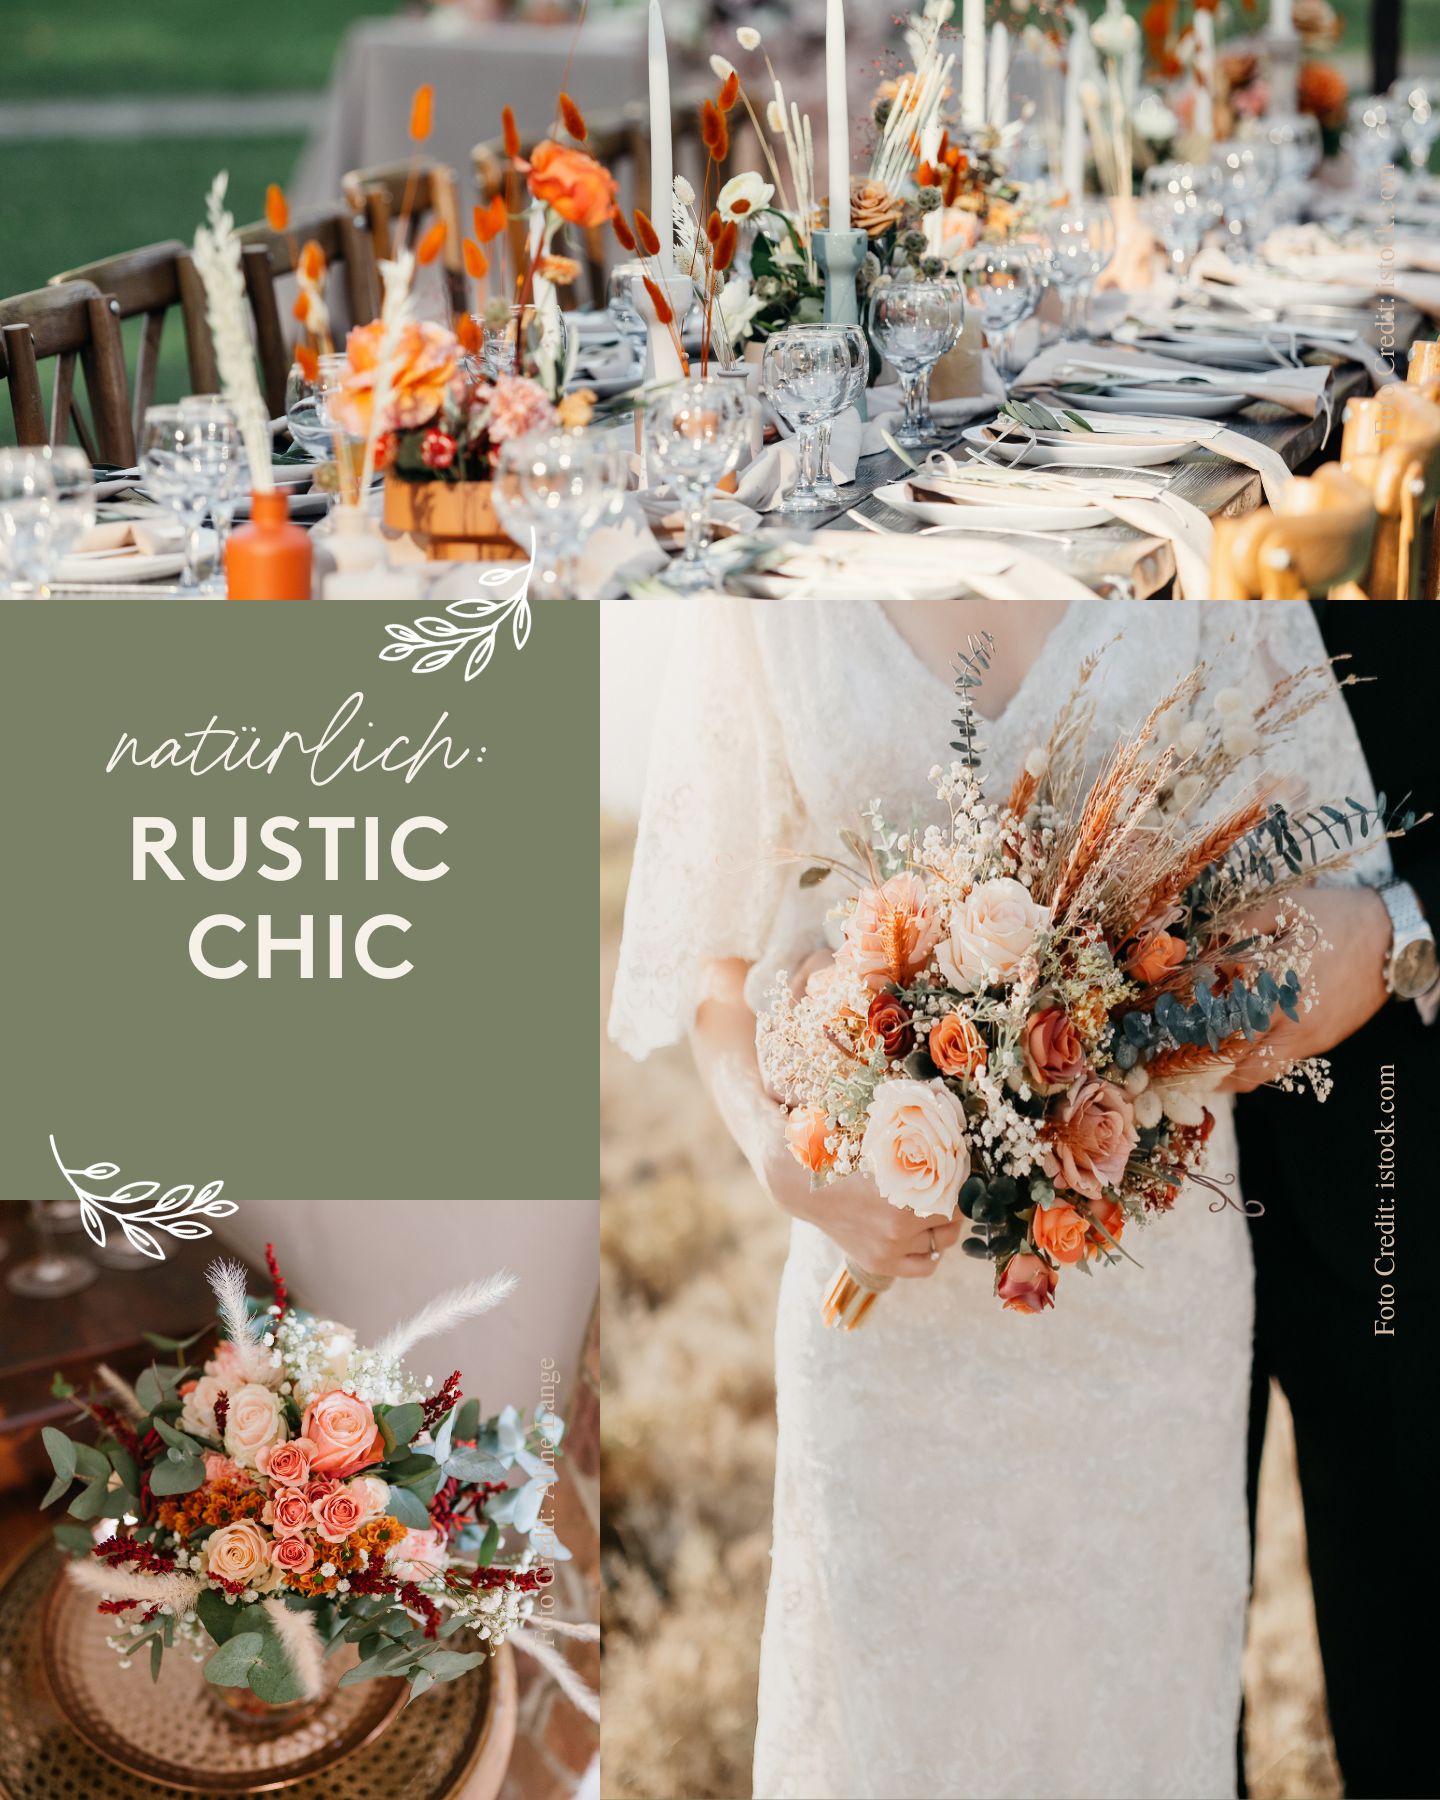 Hochzeitstrend Rustic Chic: Collage verschiedener Blumenarrangements